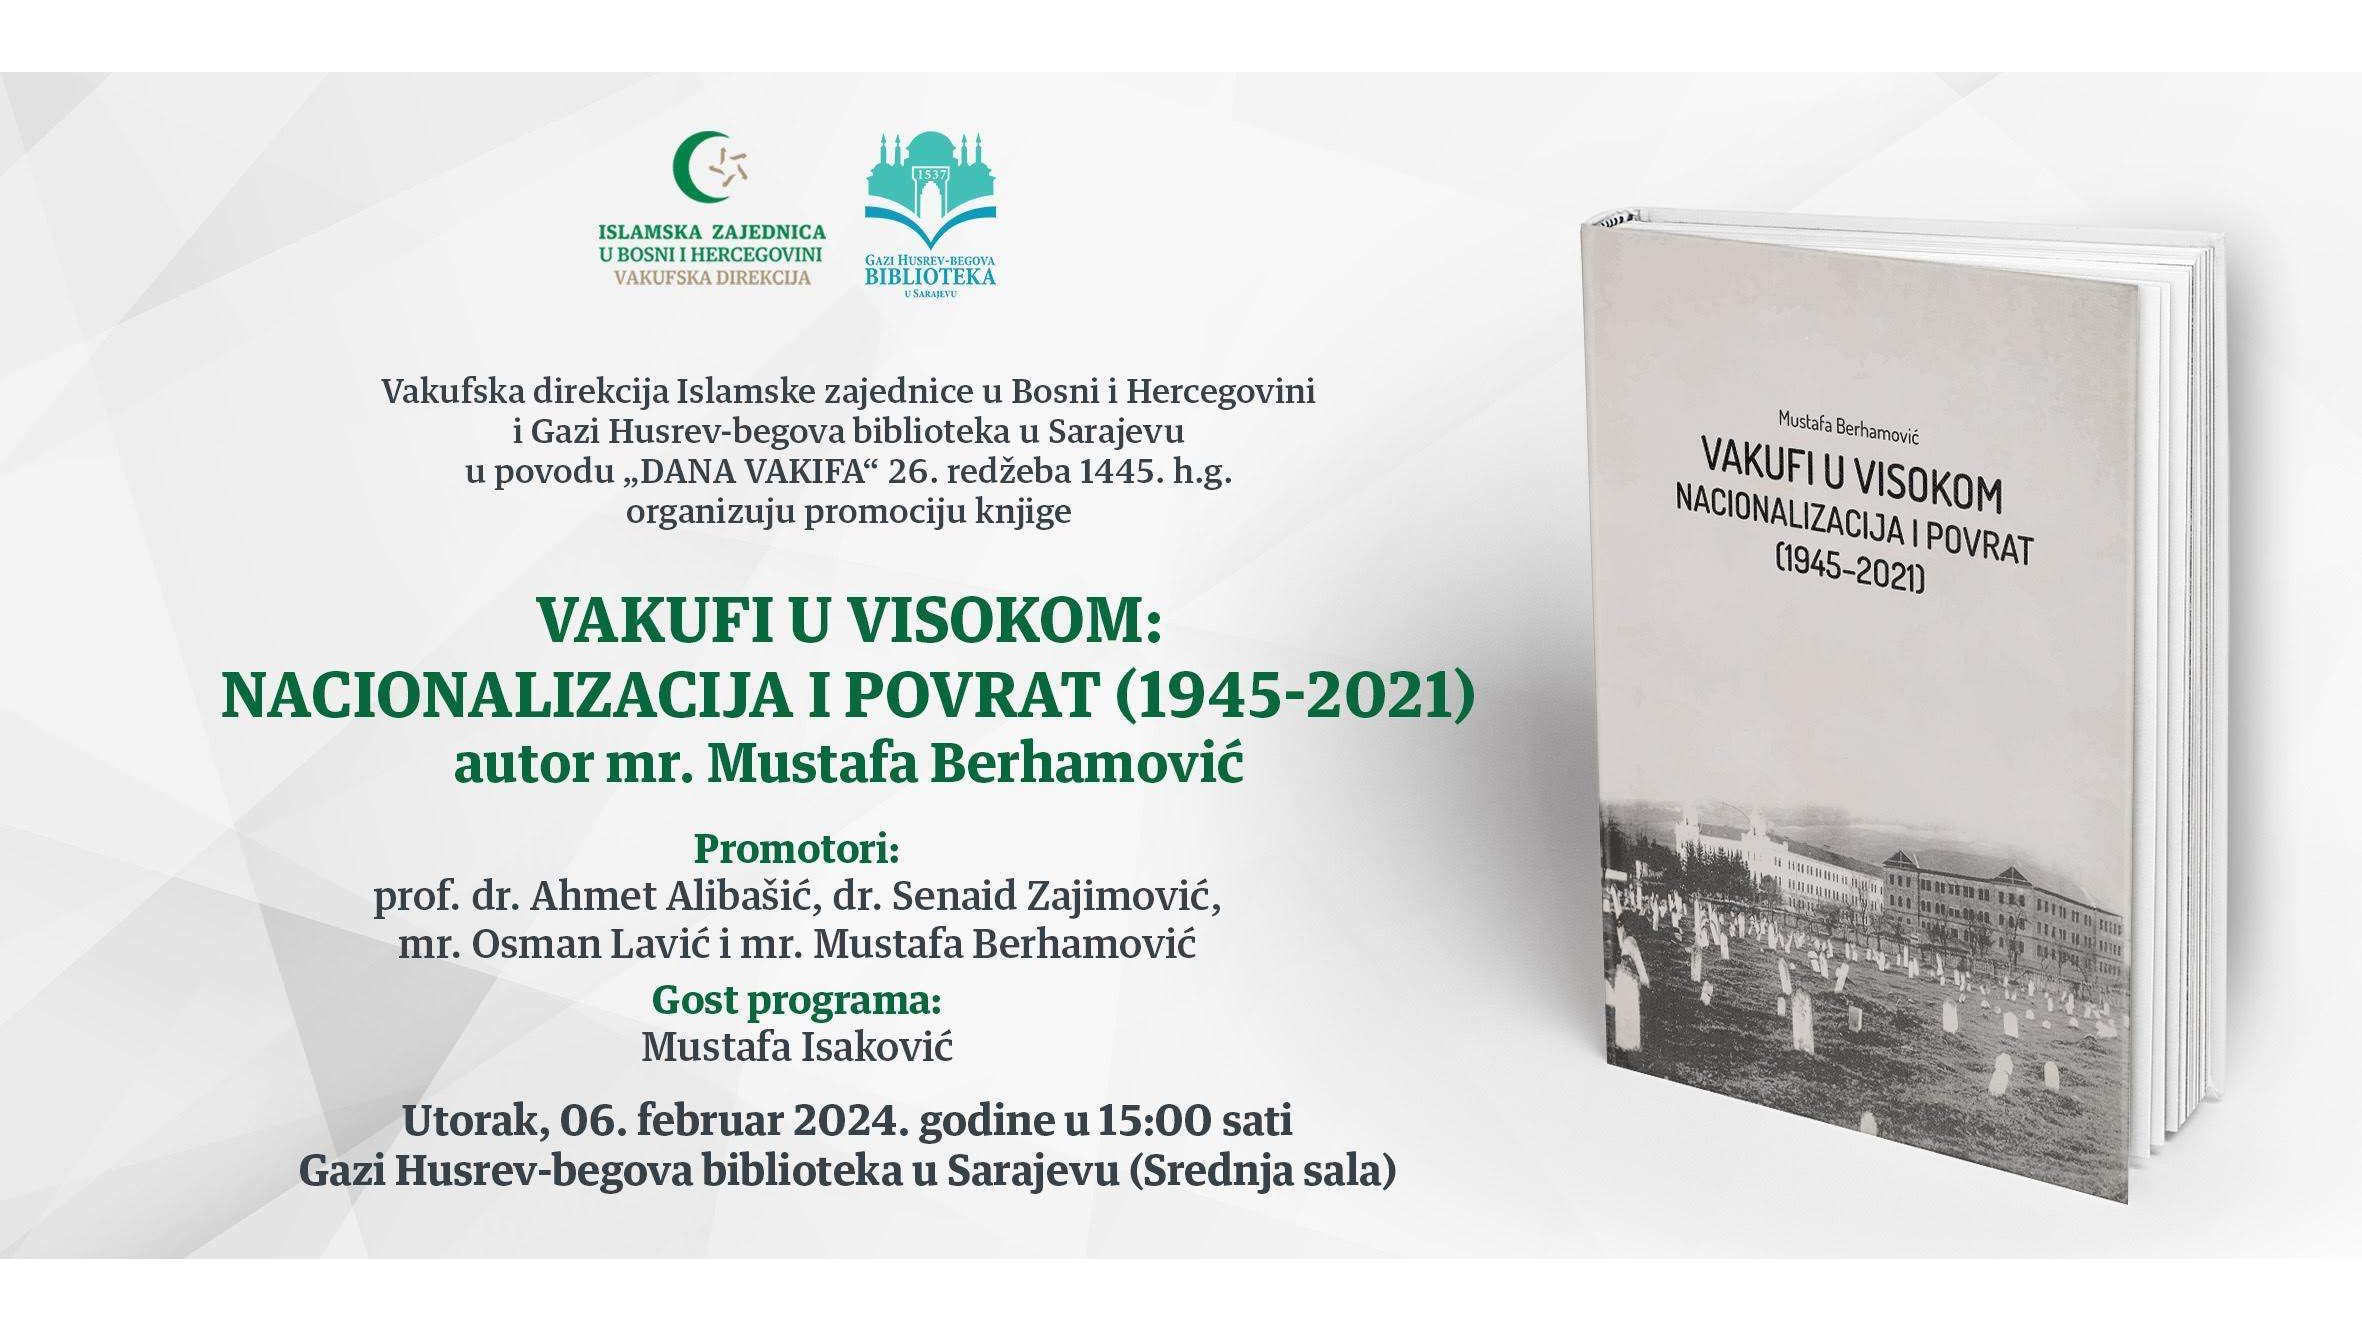 Sutra promocija knjige "Vakufi u Visokom: Nacionalizacija i povrat (1954-2021)"